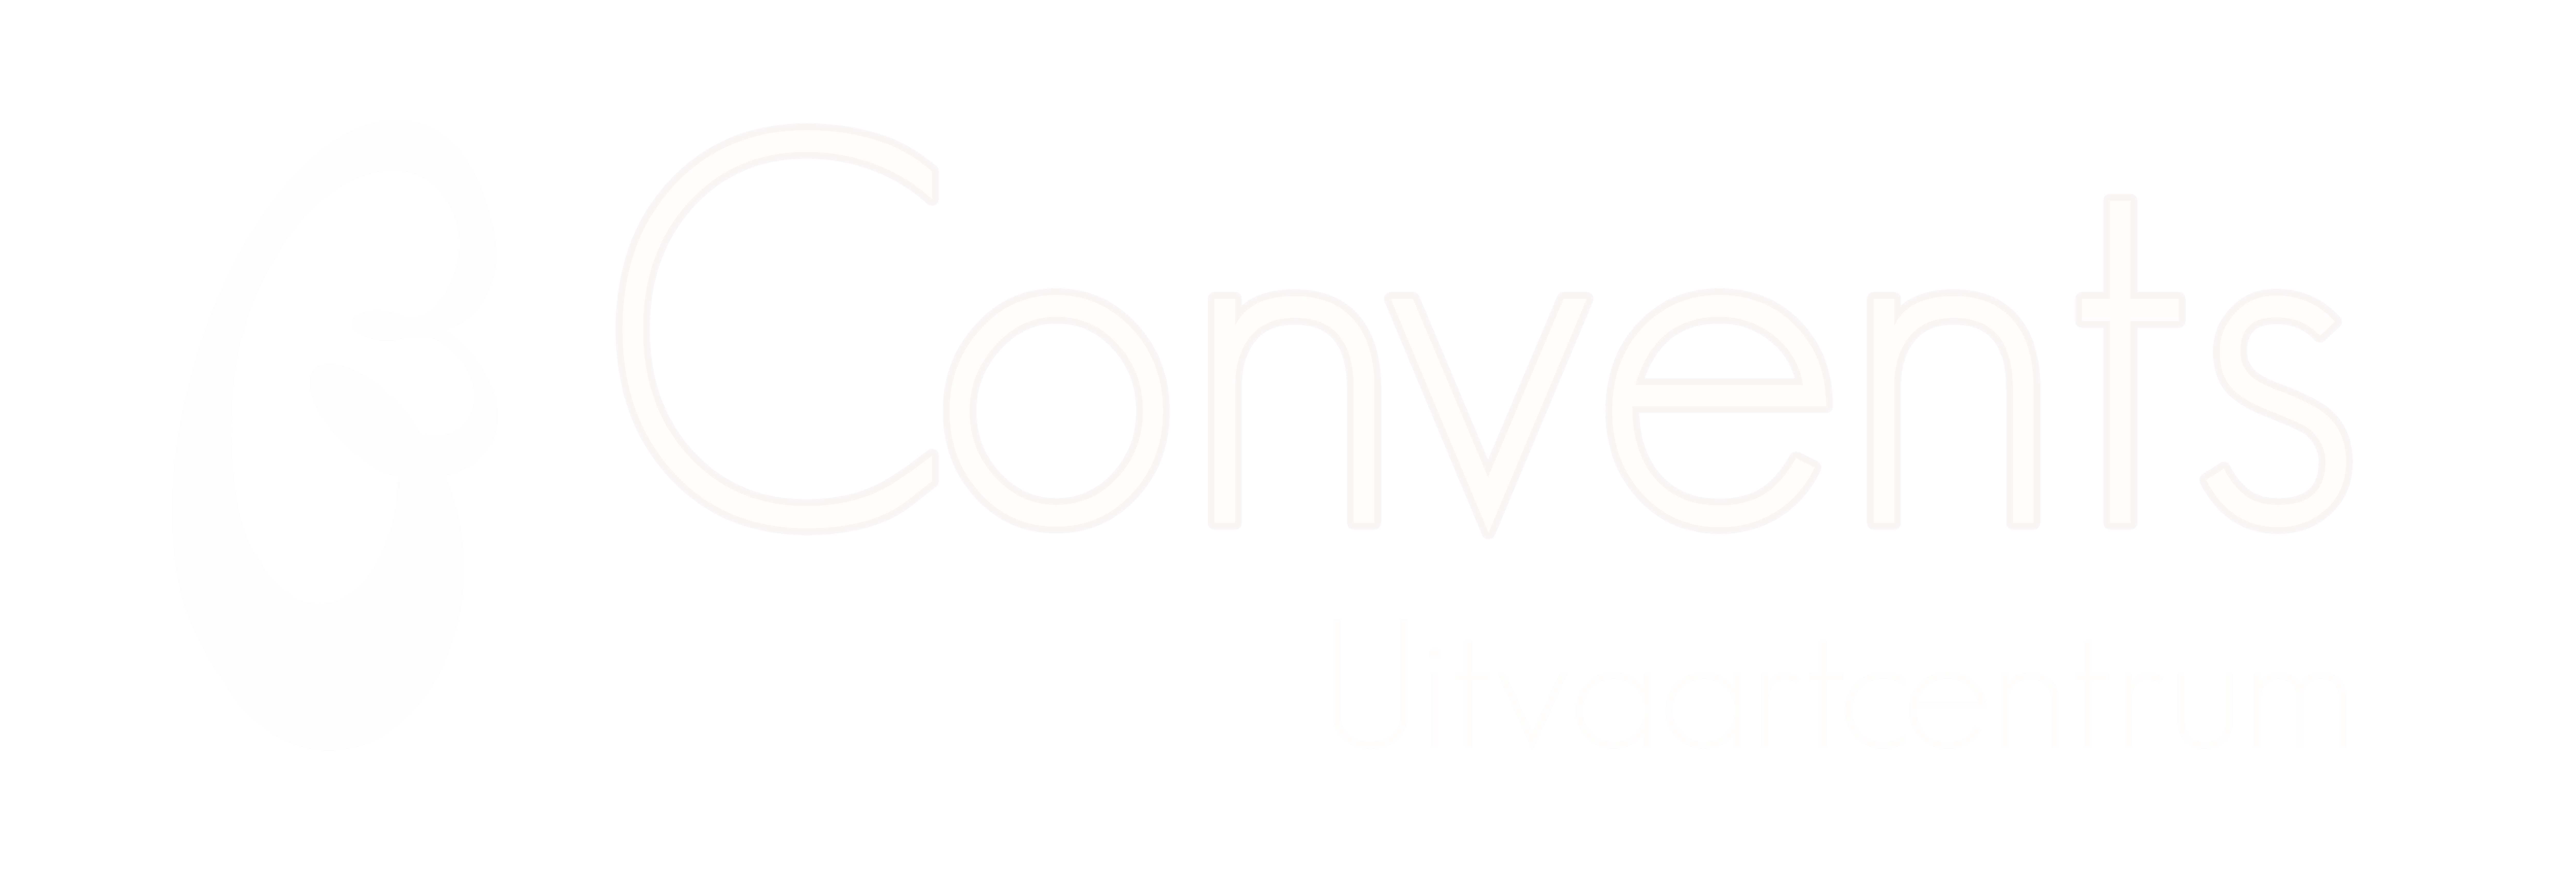 Convents volledig logo samen 3 